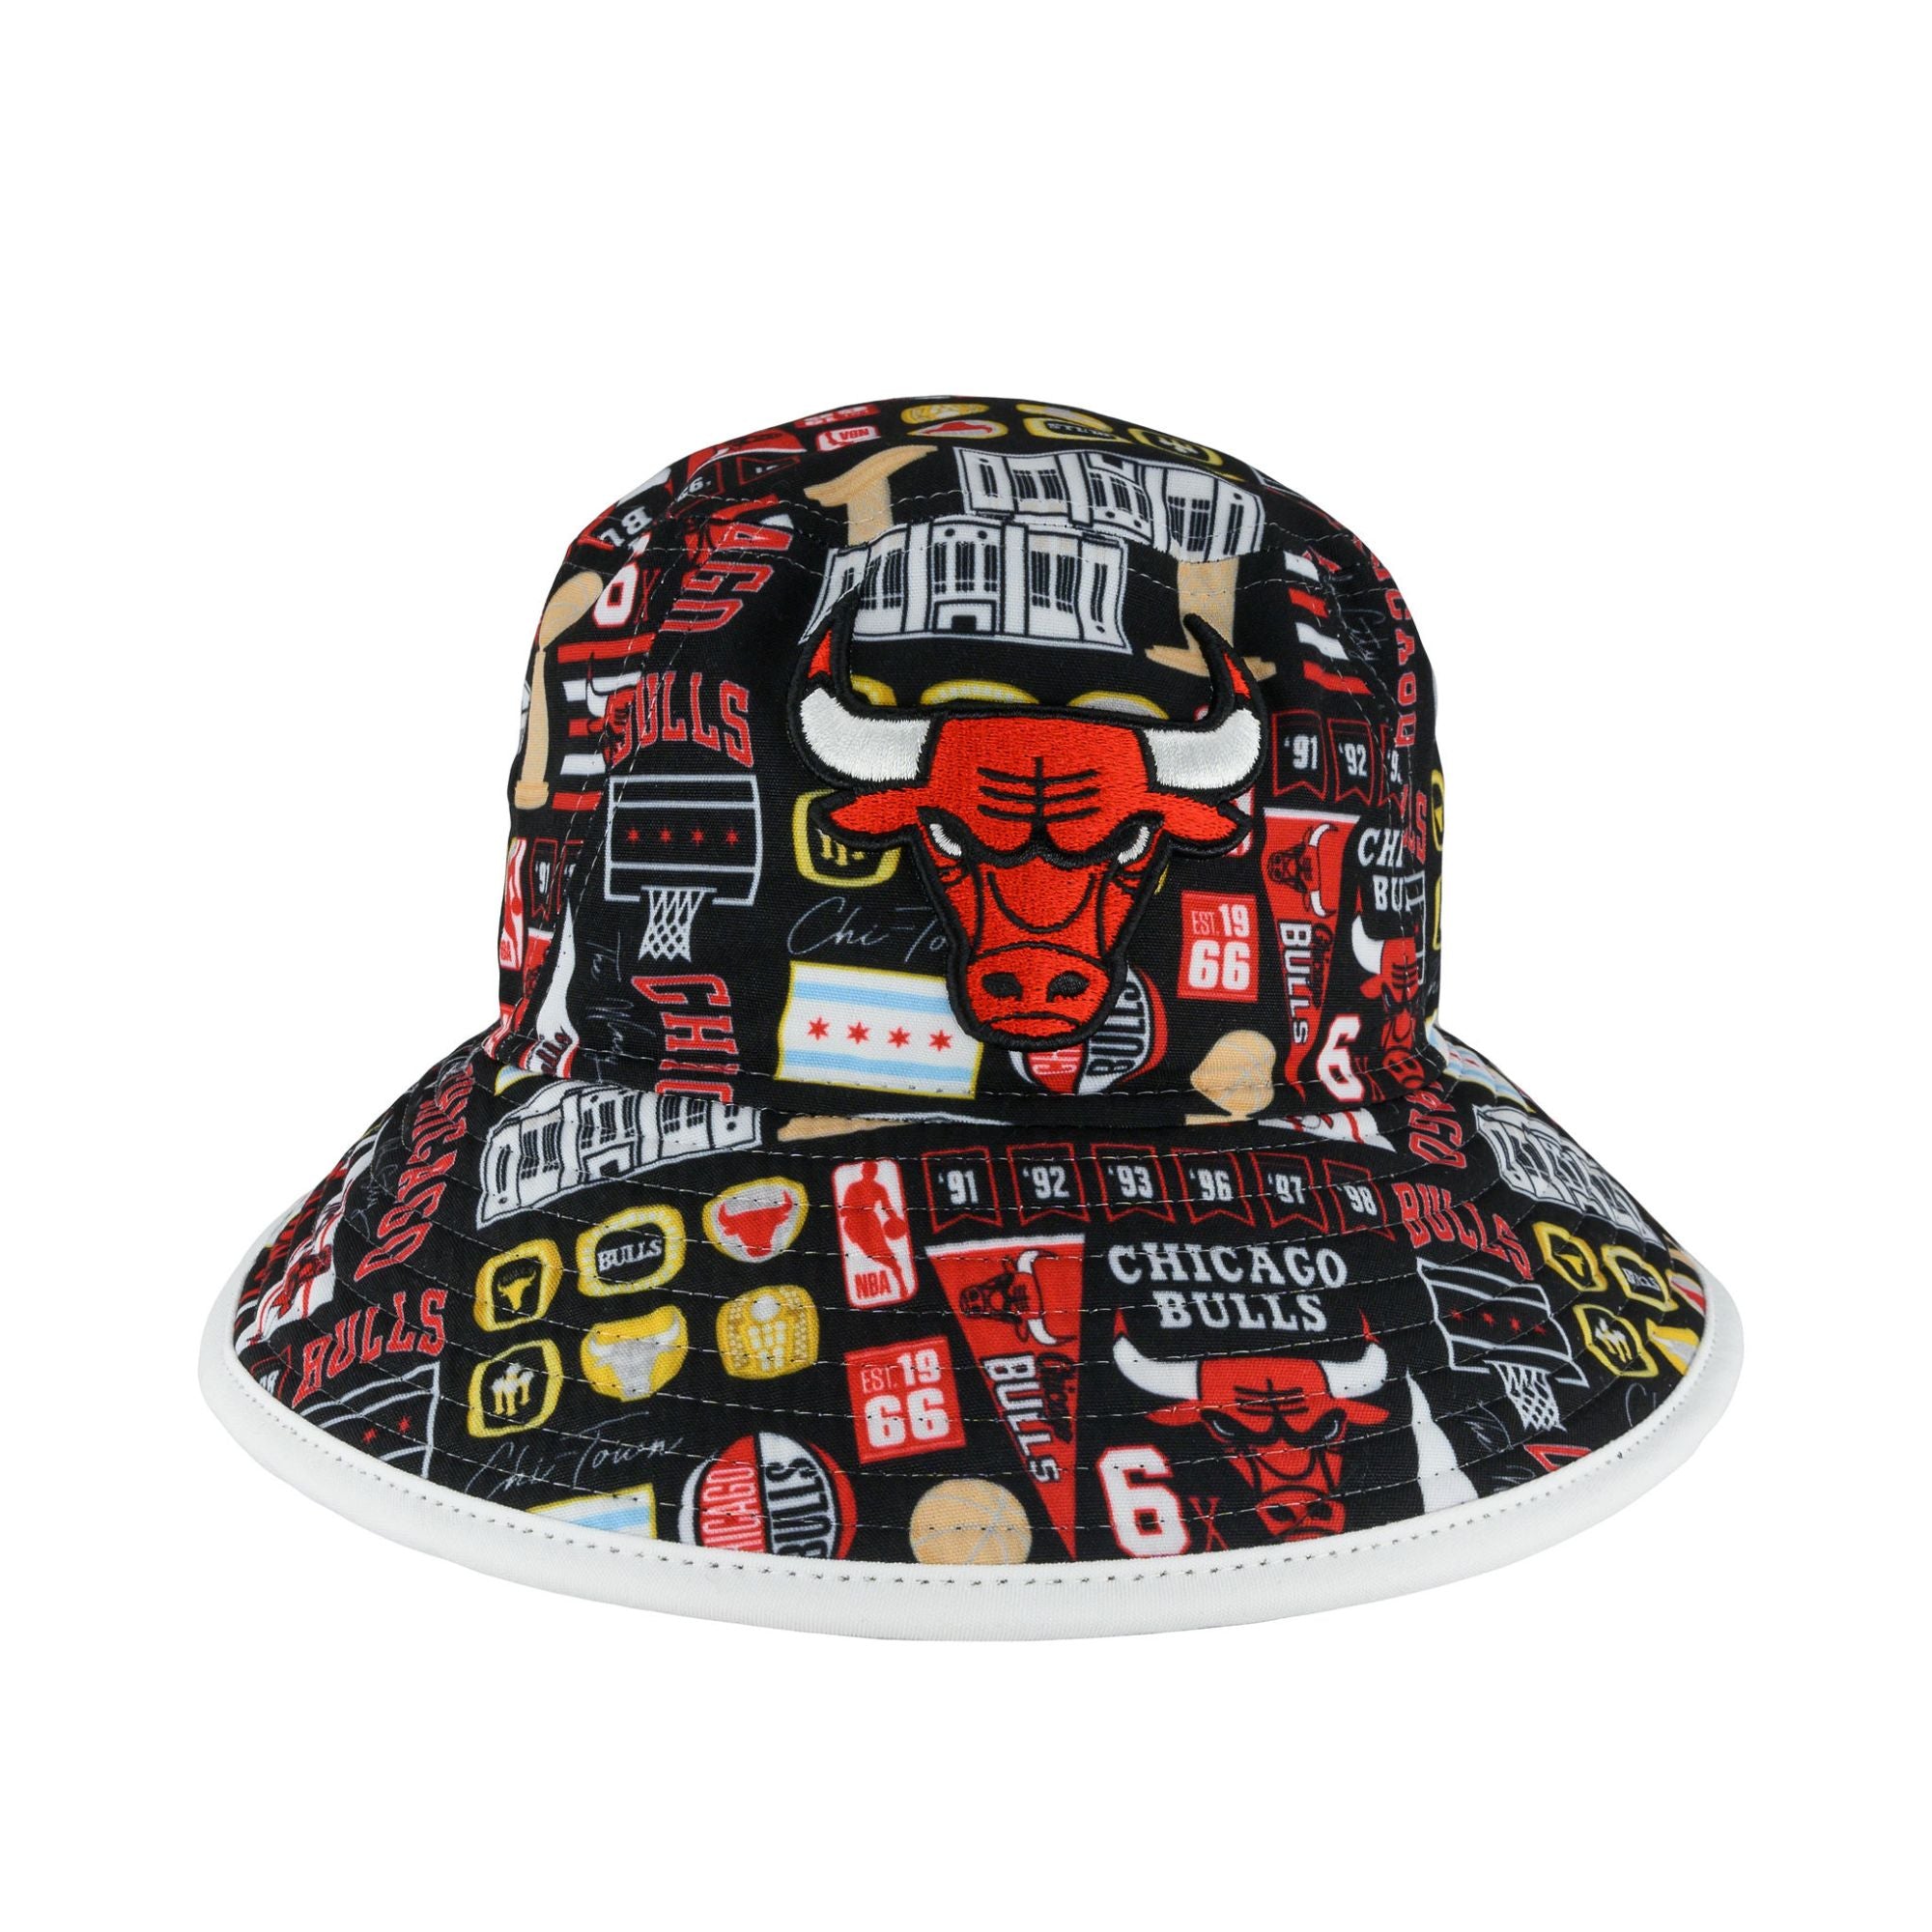 VTG Starter Chicago Bulls NBA Basketball Hat Cap Mens Size 1 6 5/8 - 7 1/8